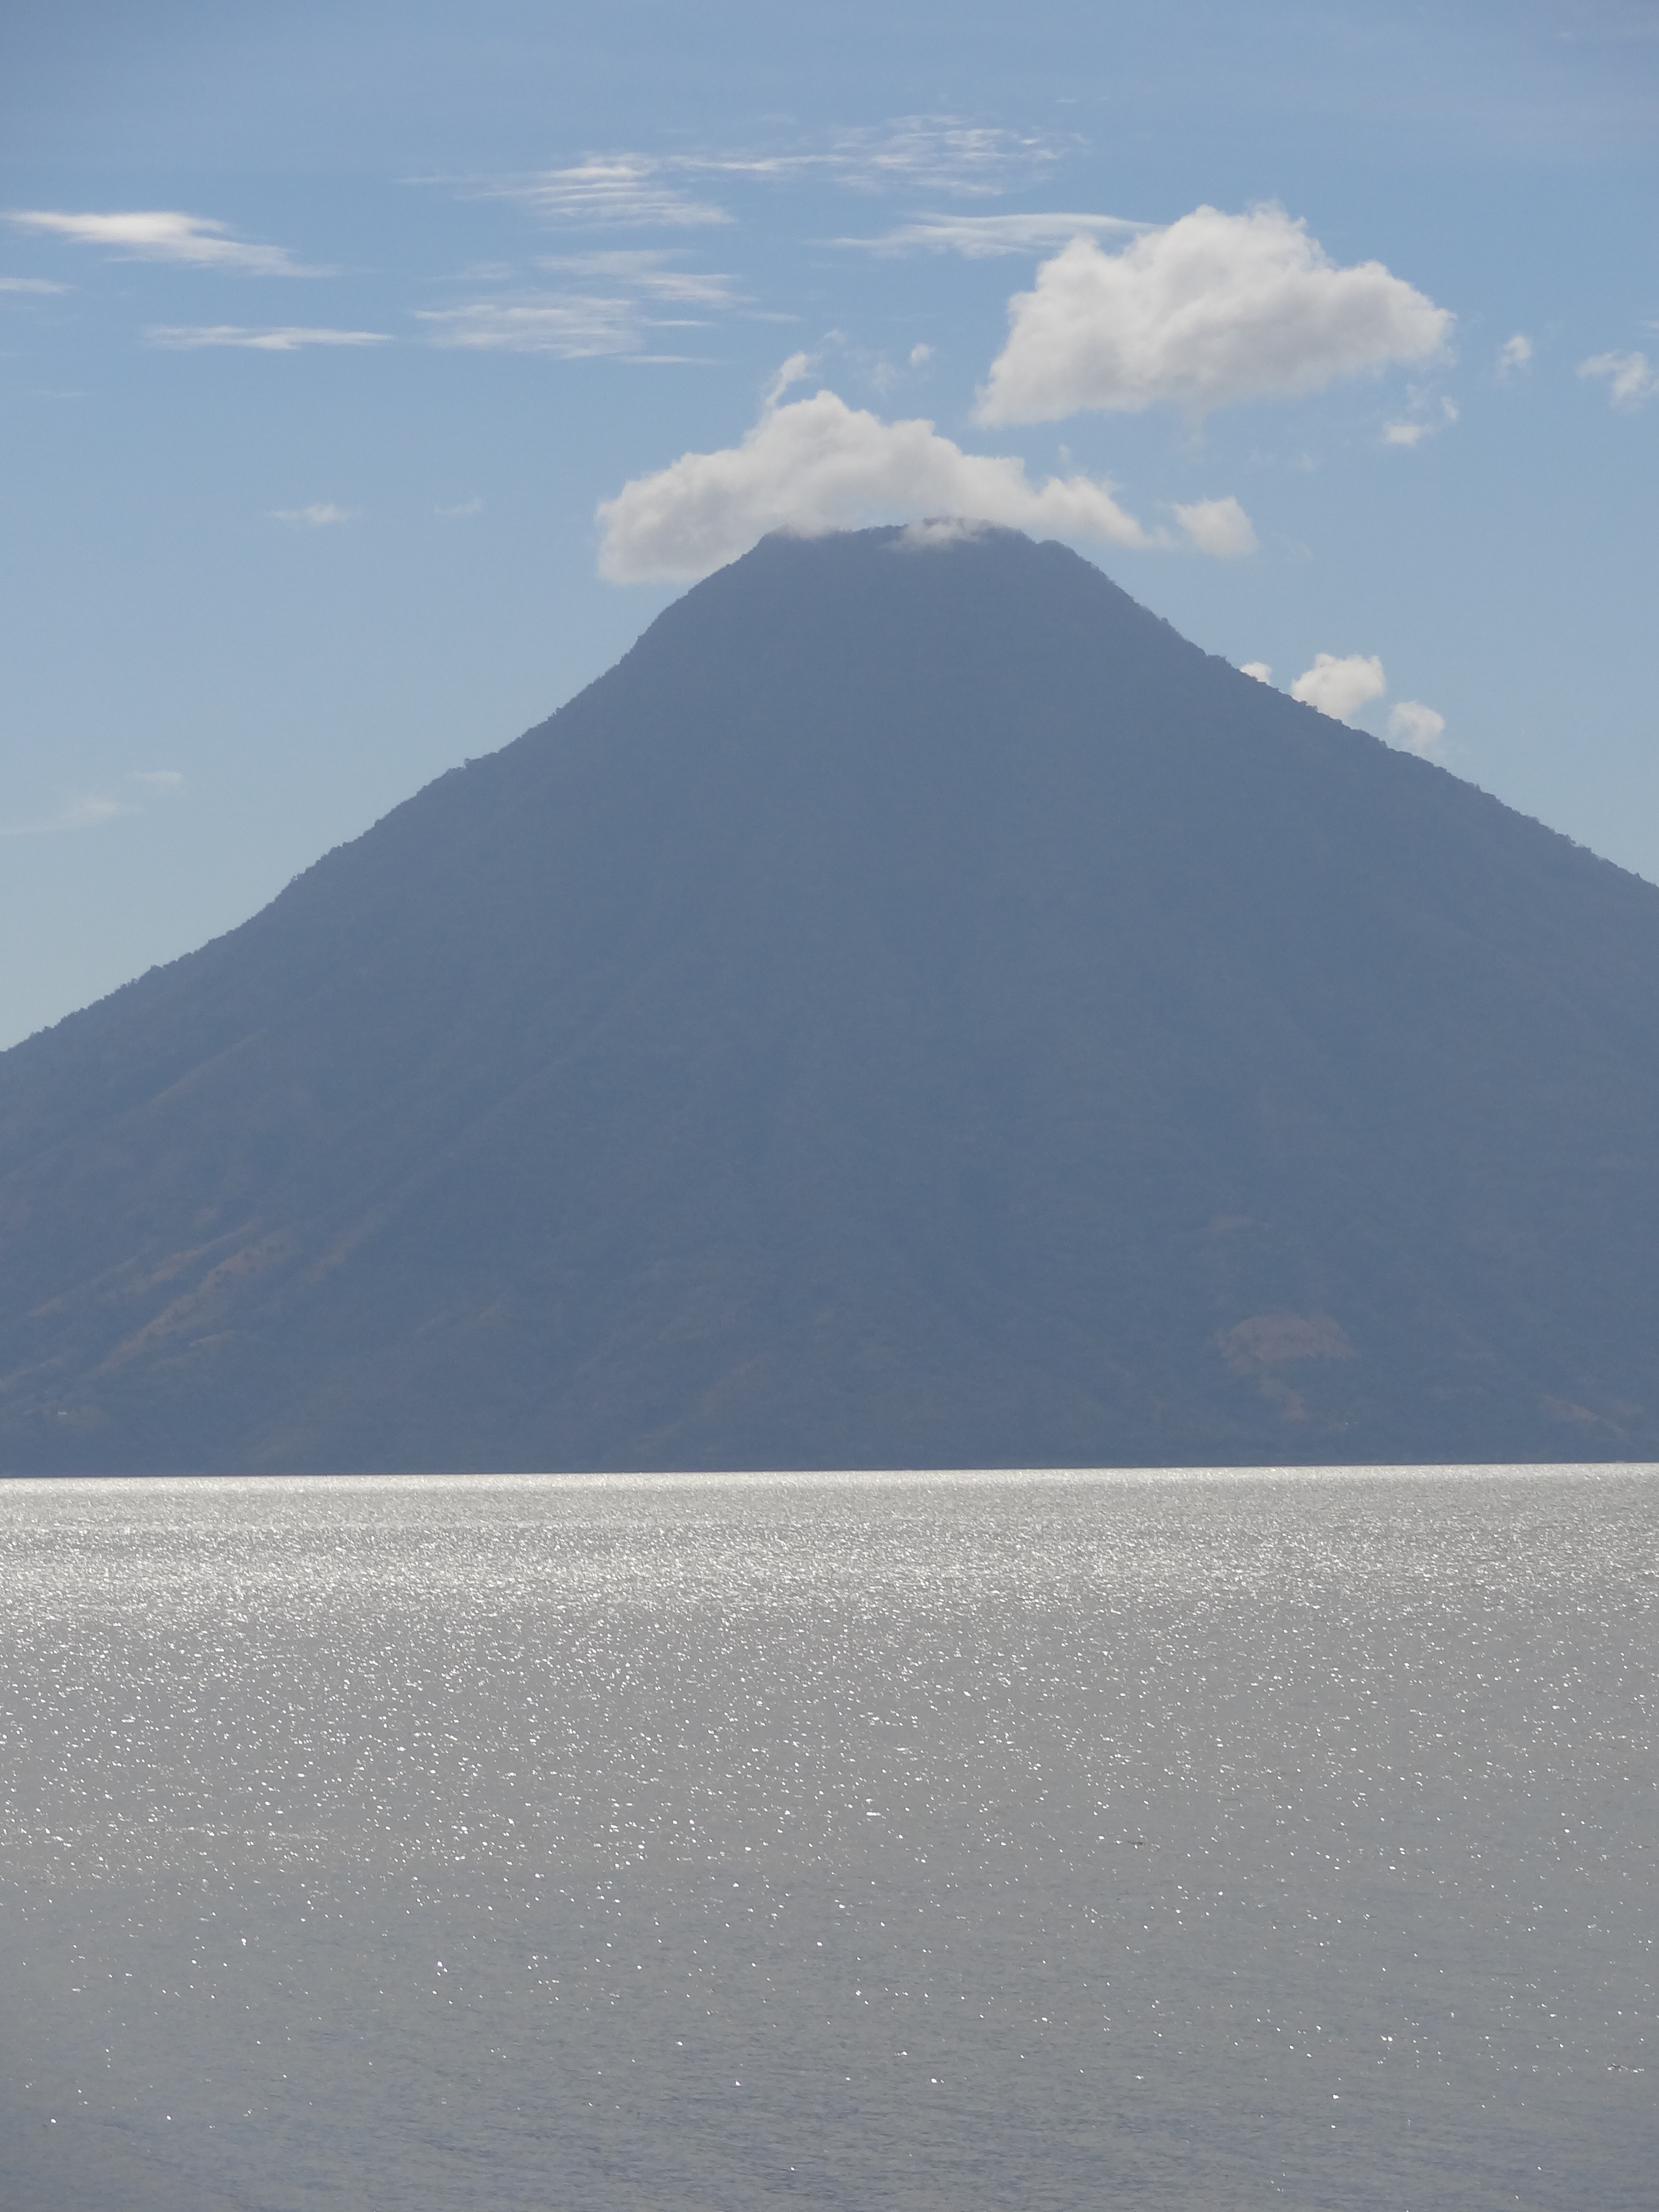 Voyage au Guatemala: Visite du Lac Atitlan avec ces volcans